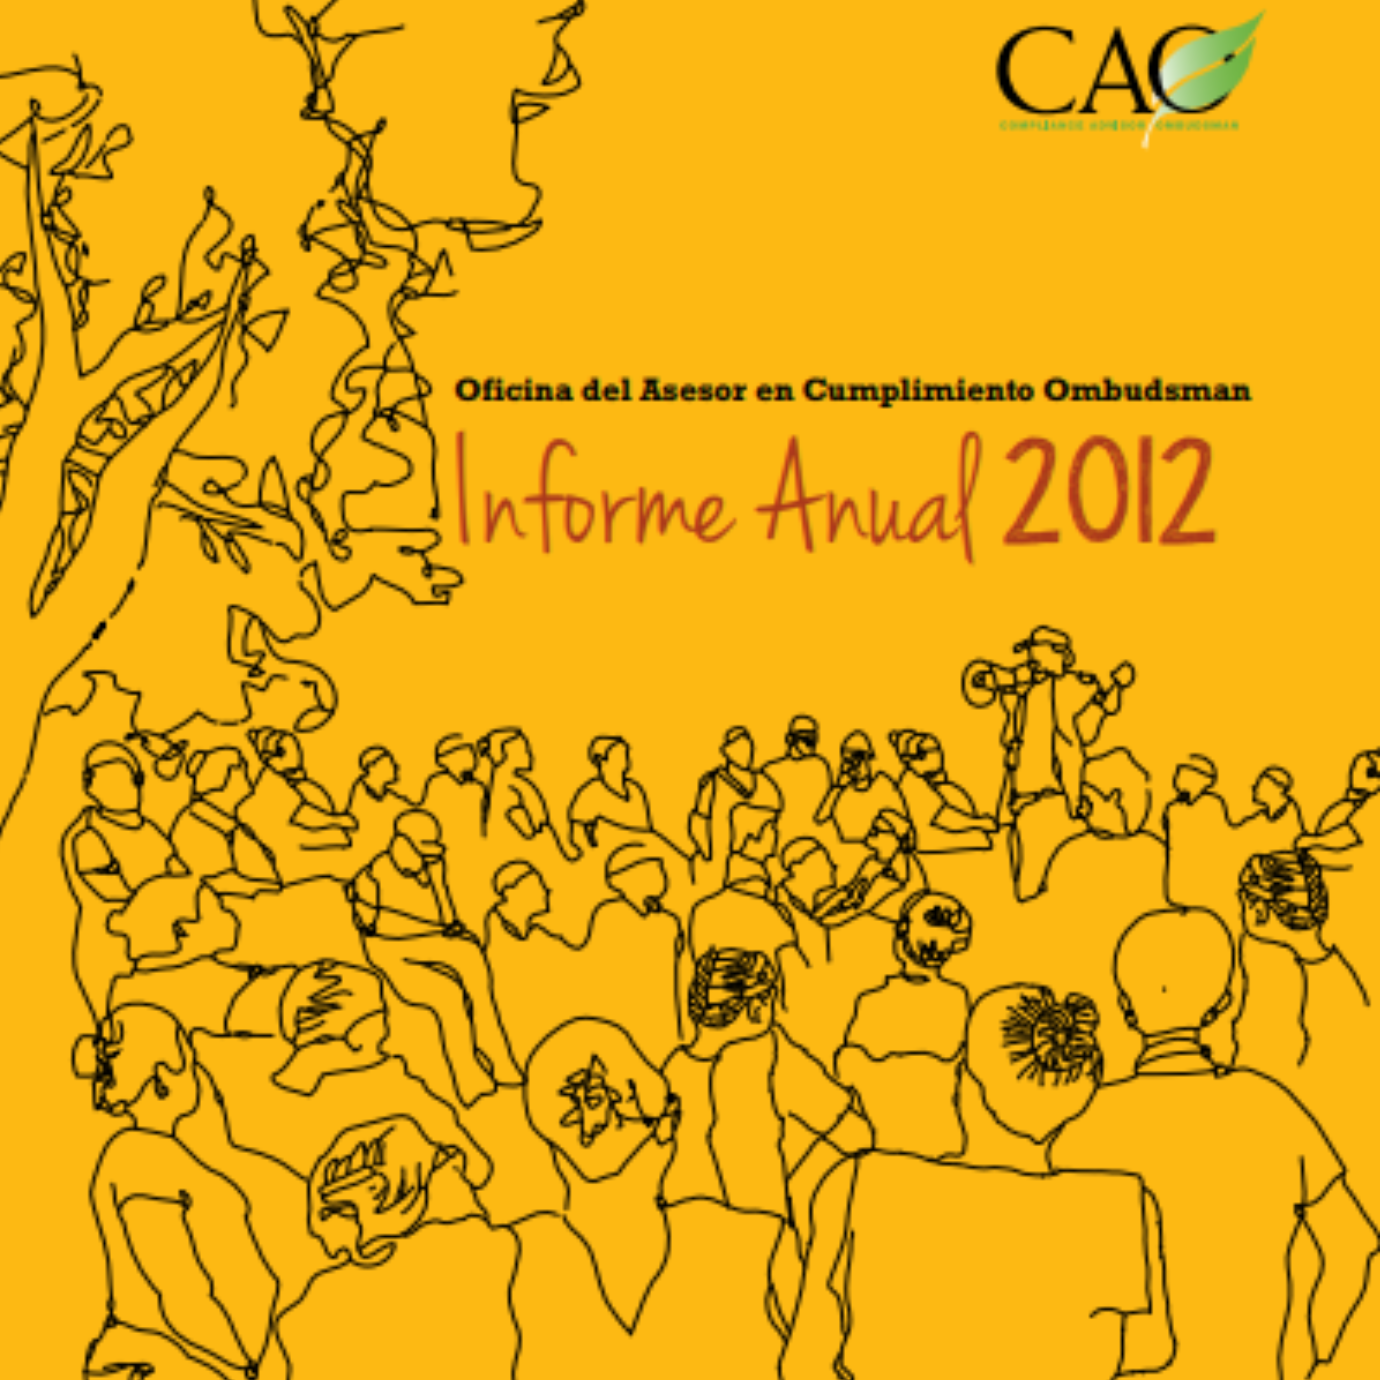 CAO 2012 Annual Report Cover